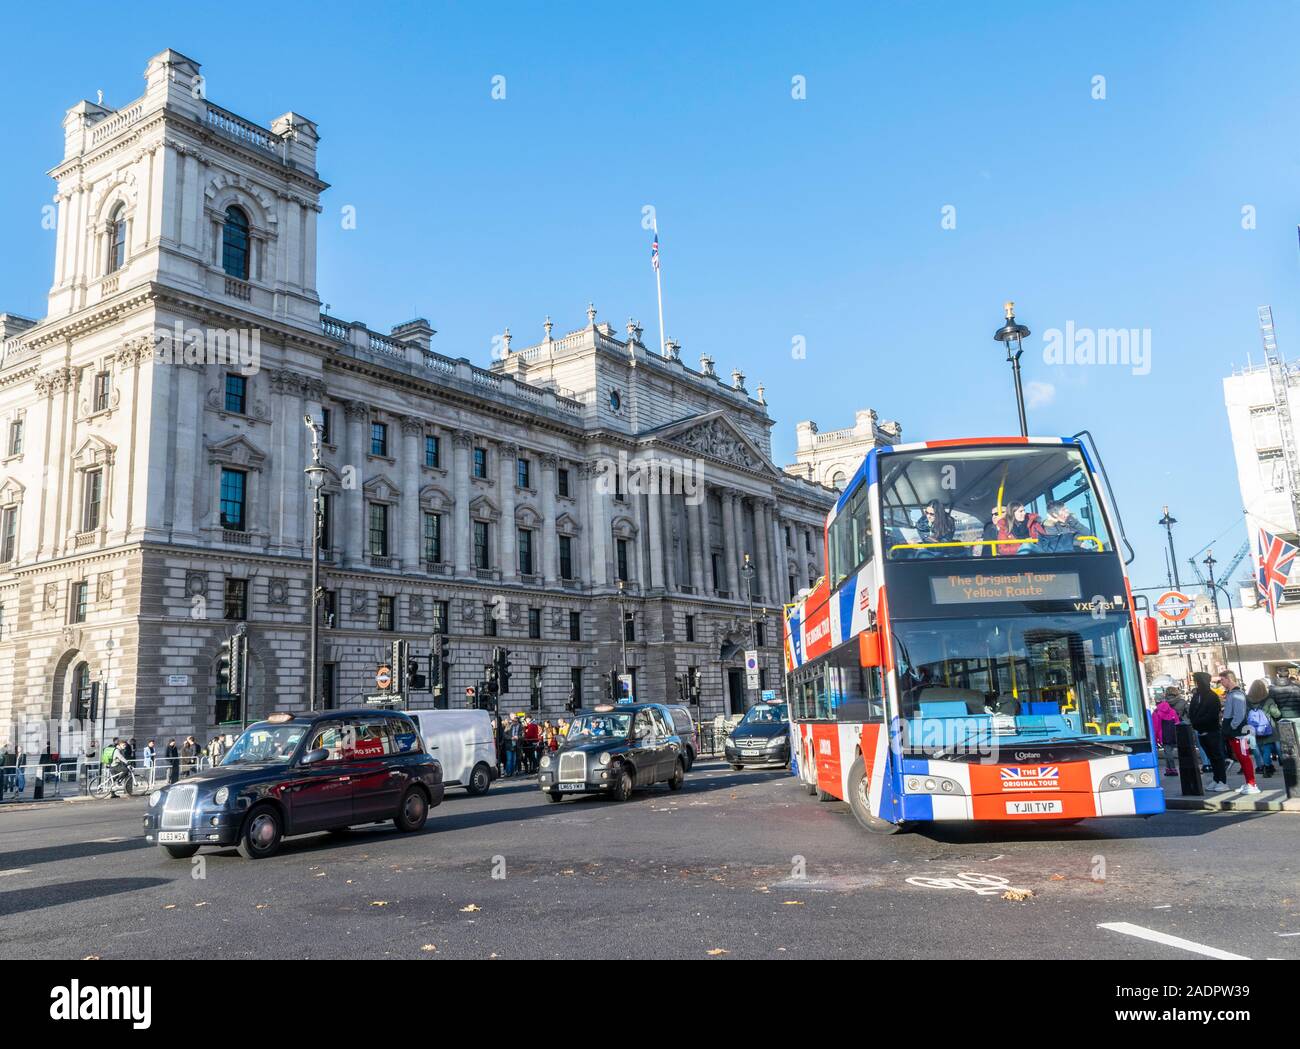 Open Top Tours Original double decker bus de tourisme se tournant vers Westminster Bridge avec les touristes et les taxis noirs de Londres Banque D'Images